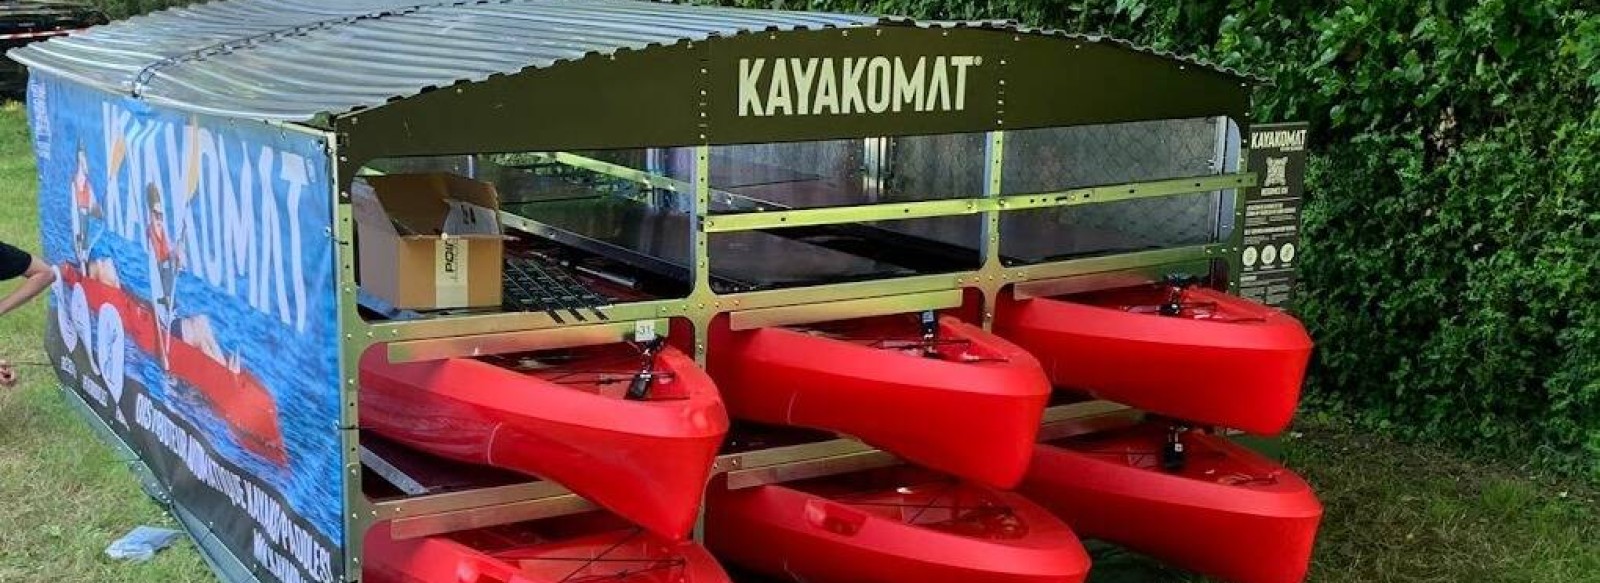 Kayak en libre-service - Kayakomat Riaille